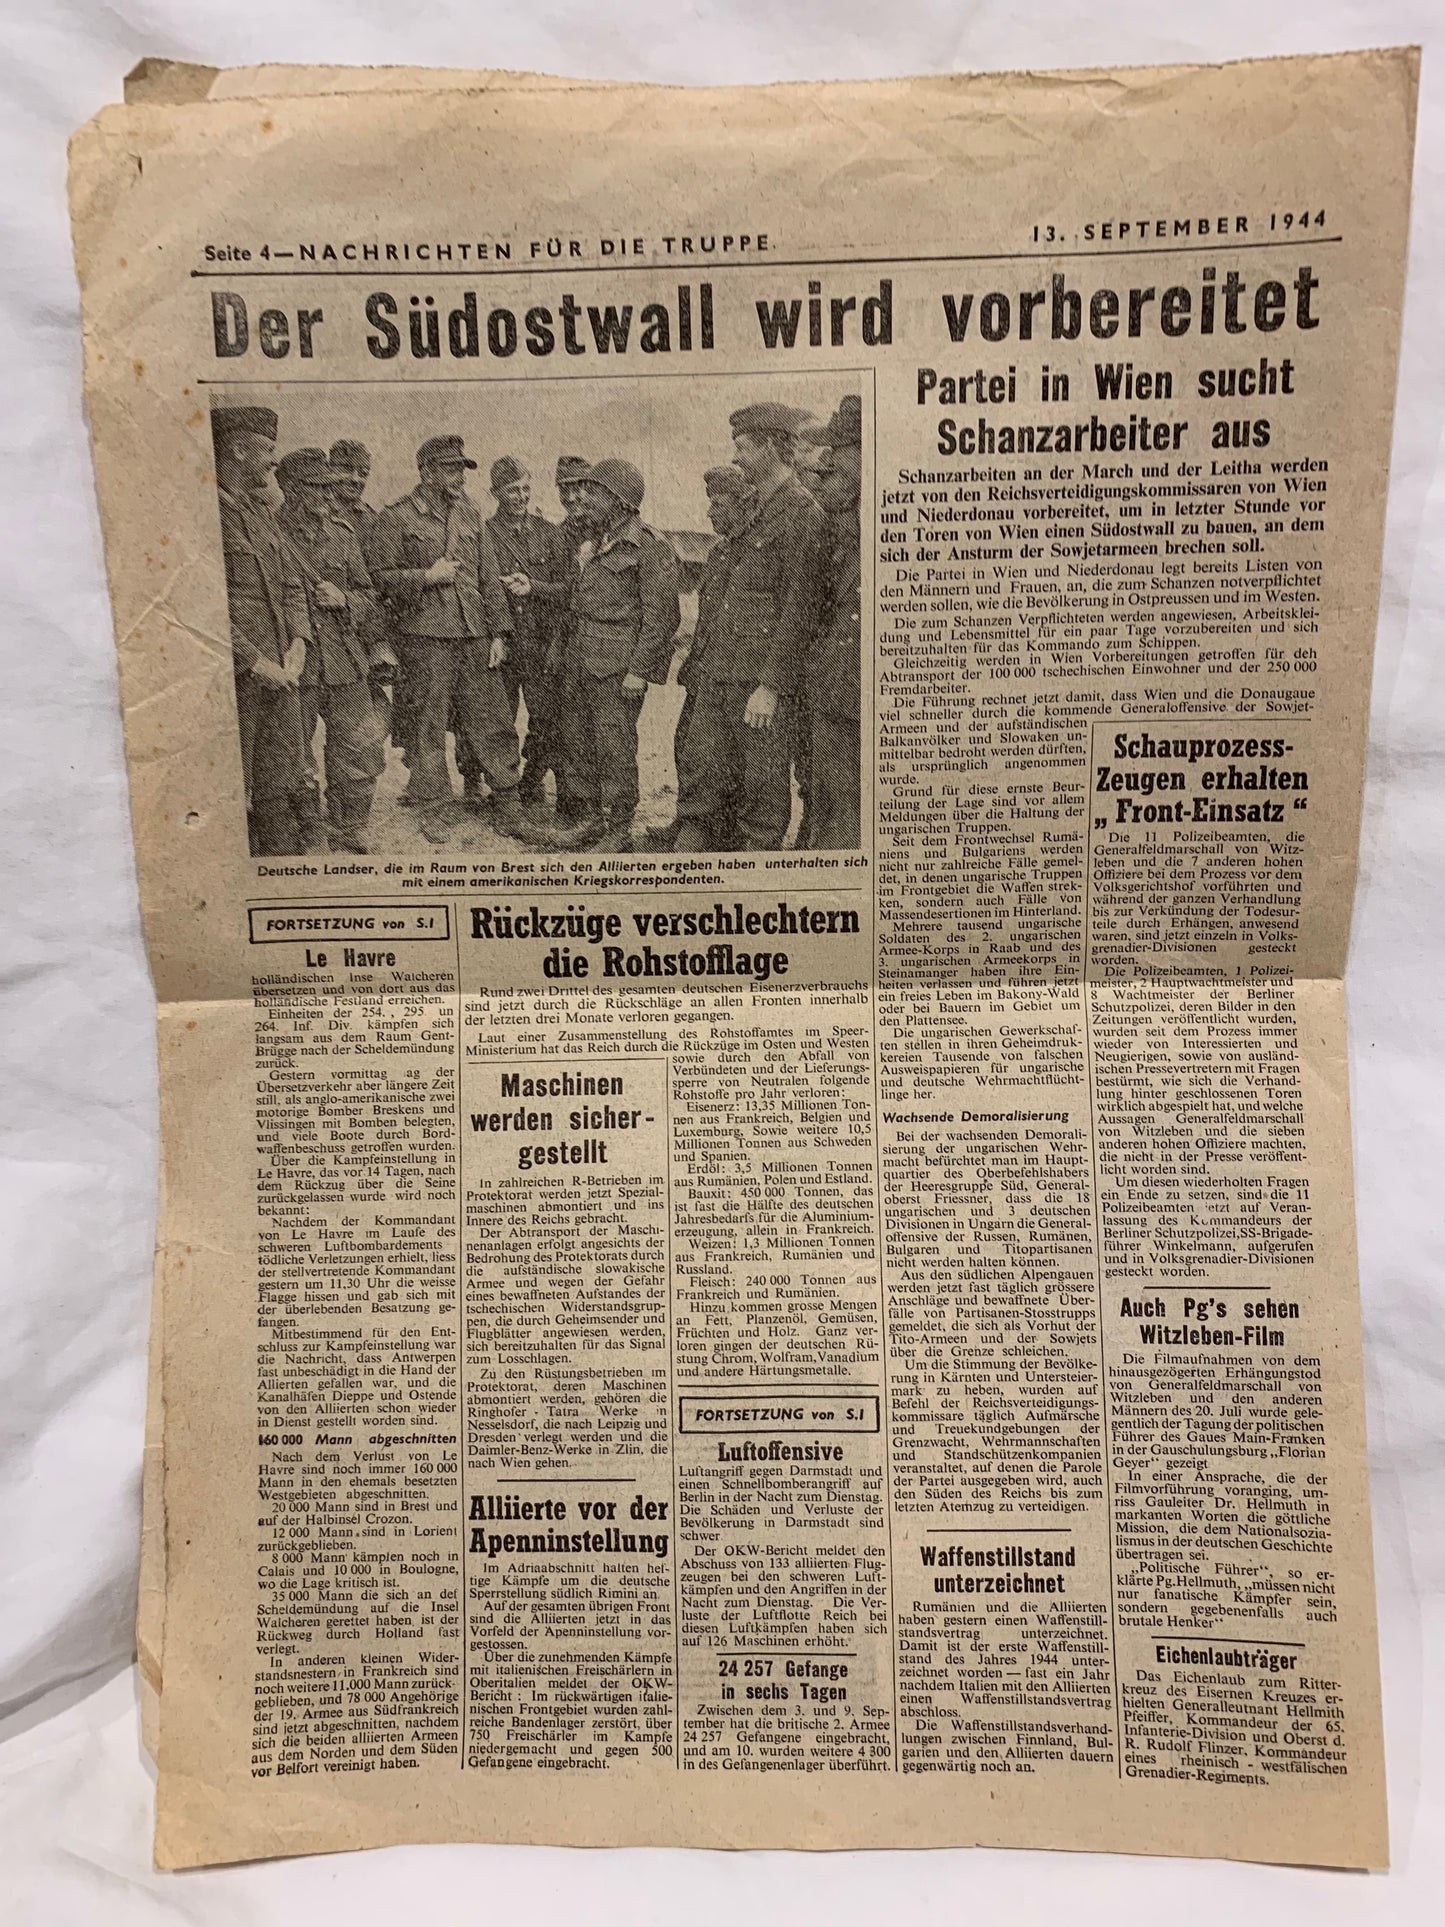 WW2 British propaganda Newspaper dropped on German forces by the RAF 1944